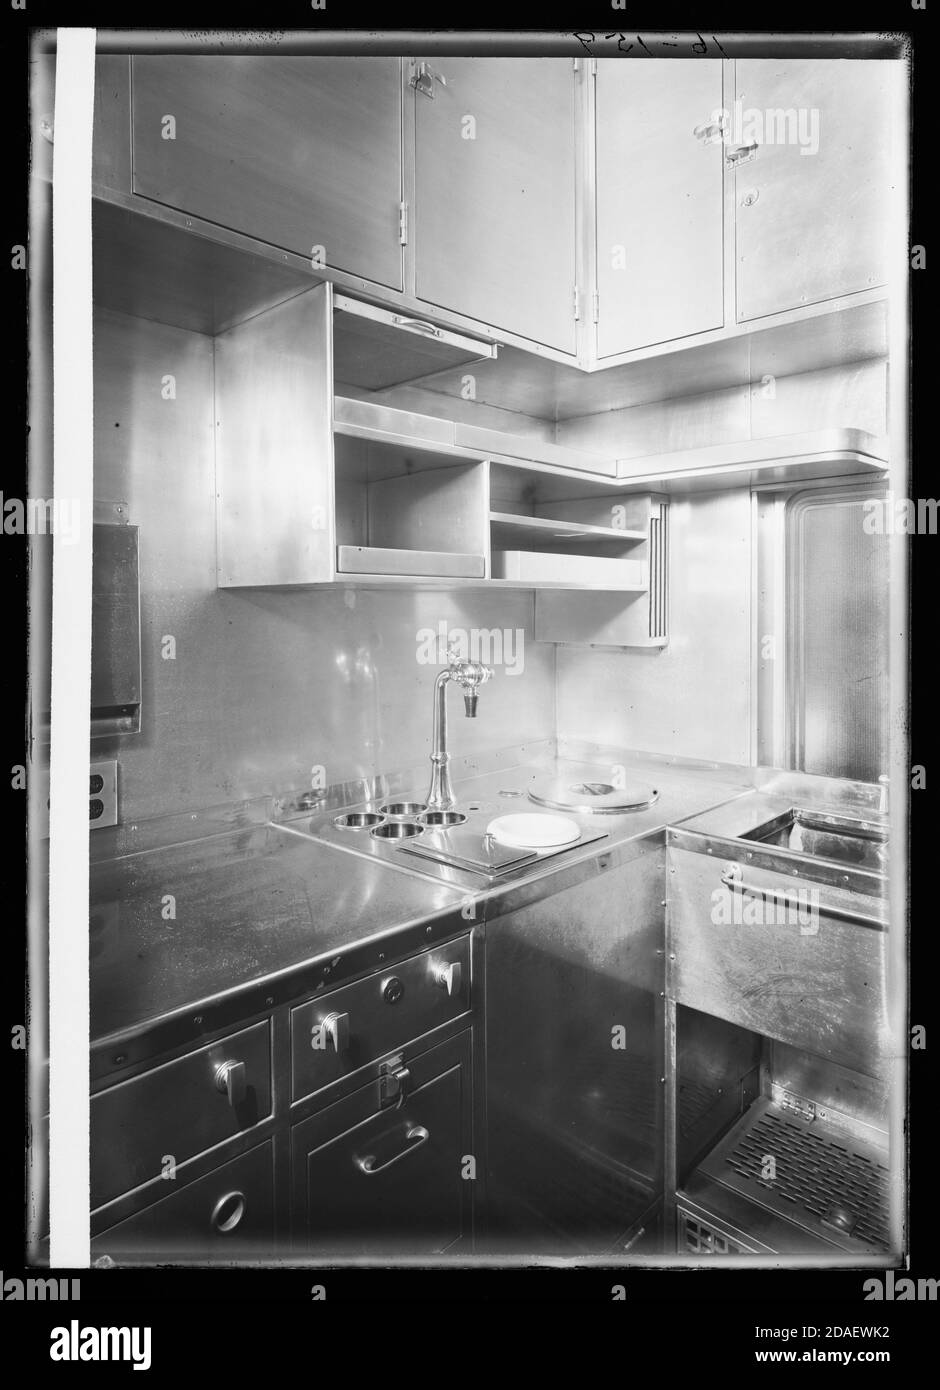 Cuisine en voiture en aluminium nommée George M. Pullman, exposée au siècle du progrès à Chicago en 1933. Banque D'Images